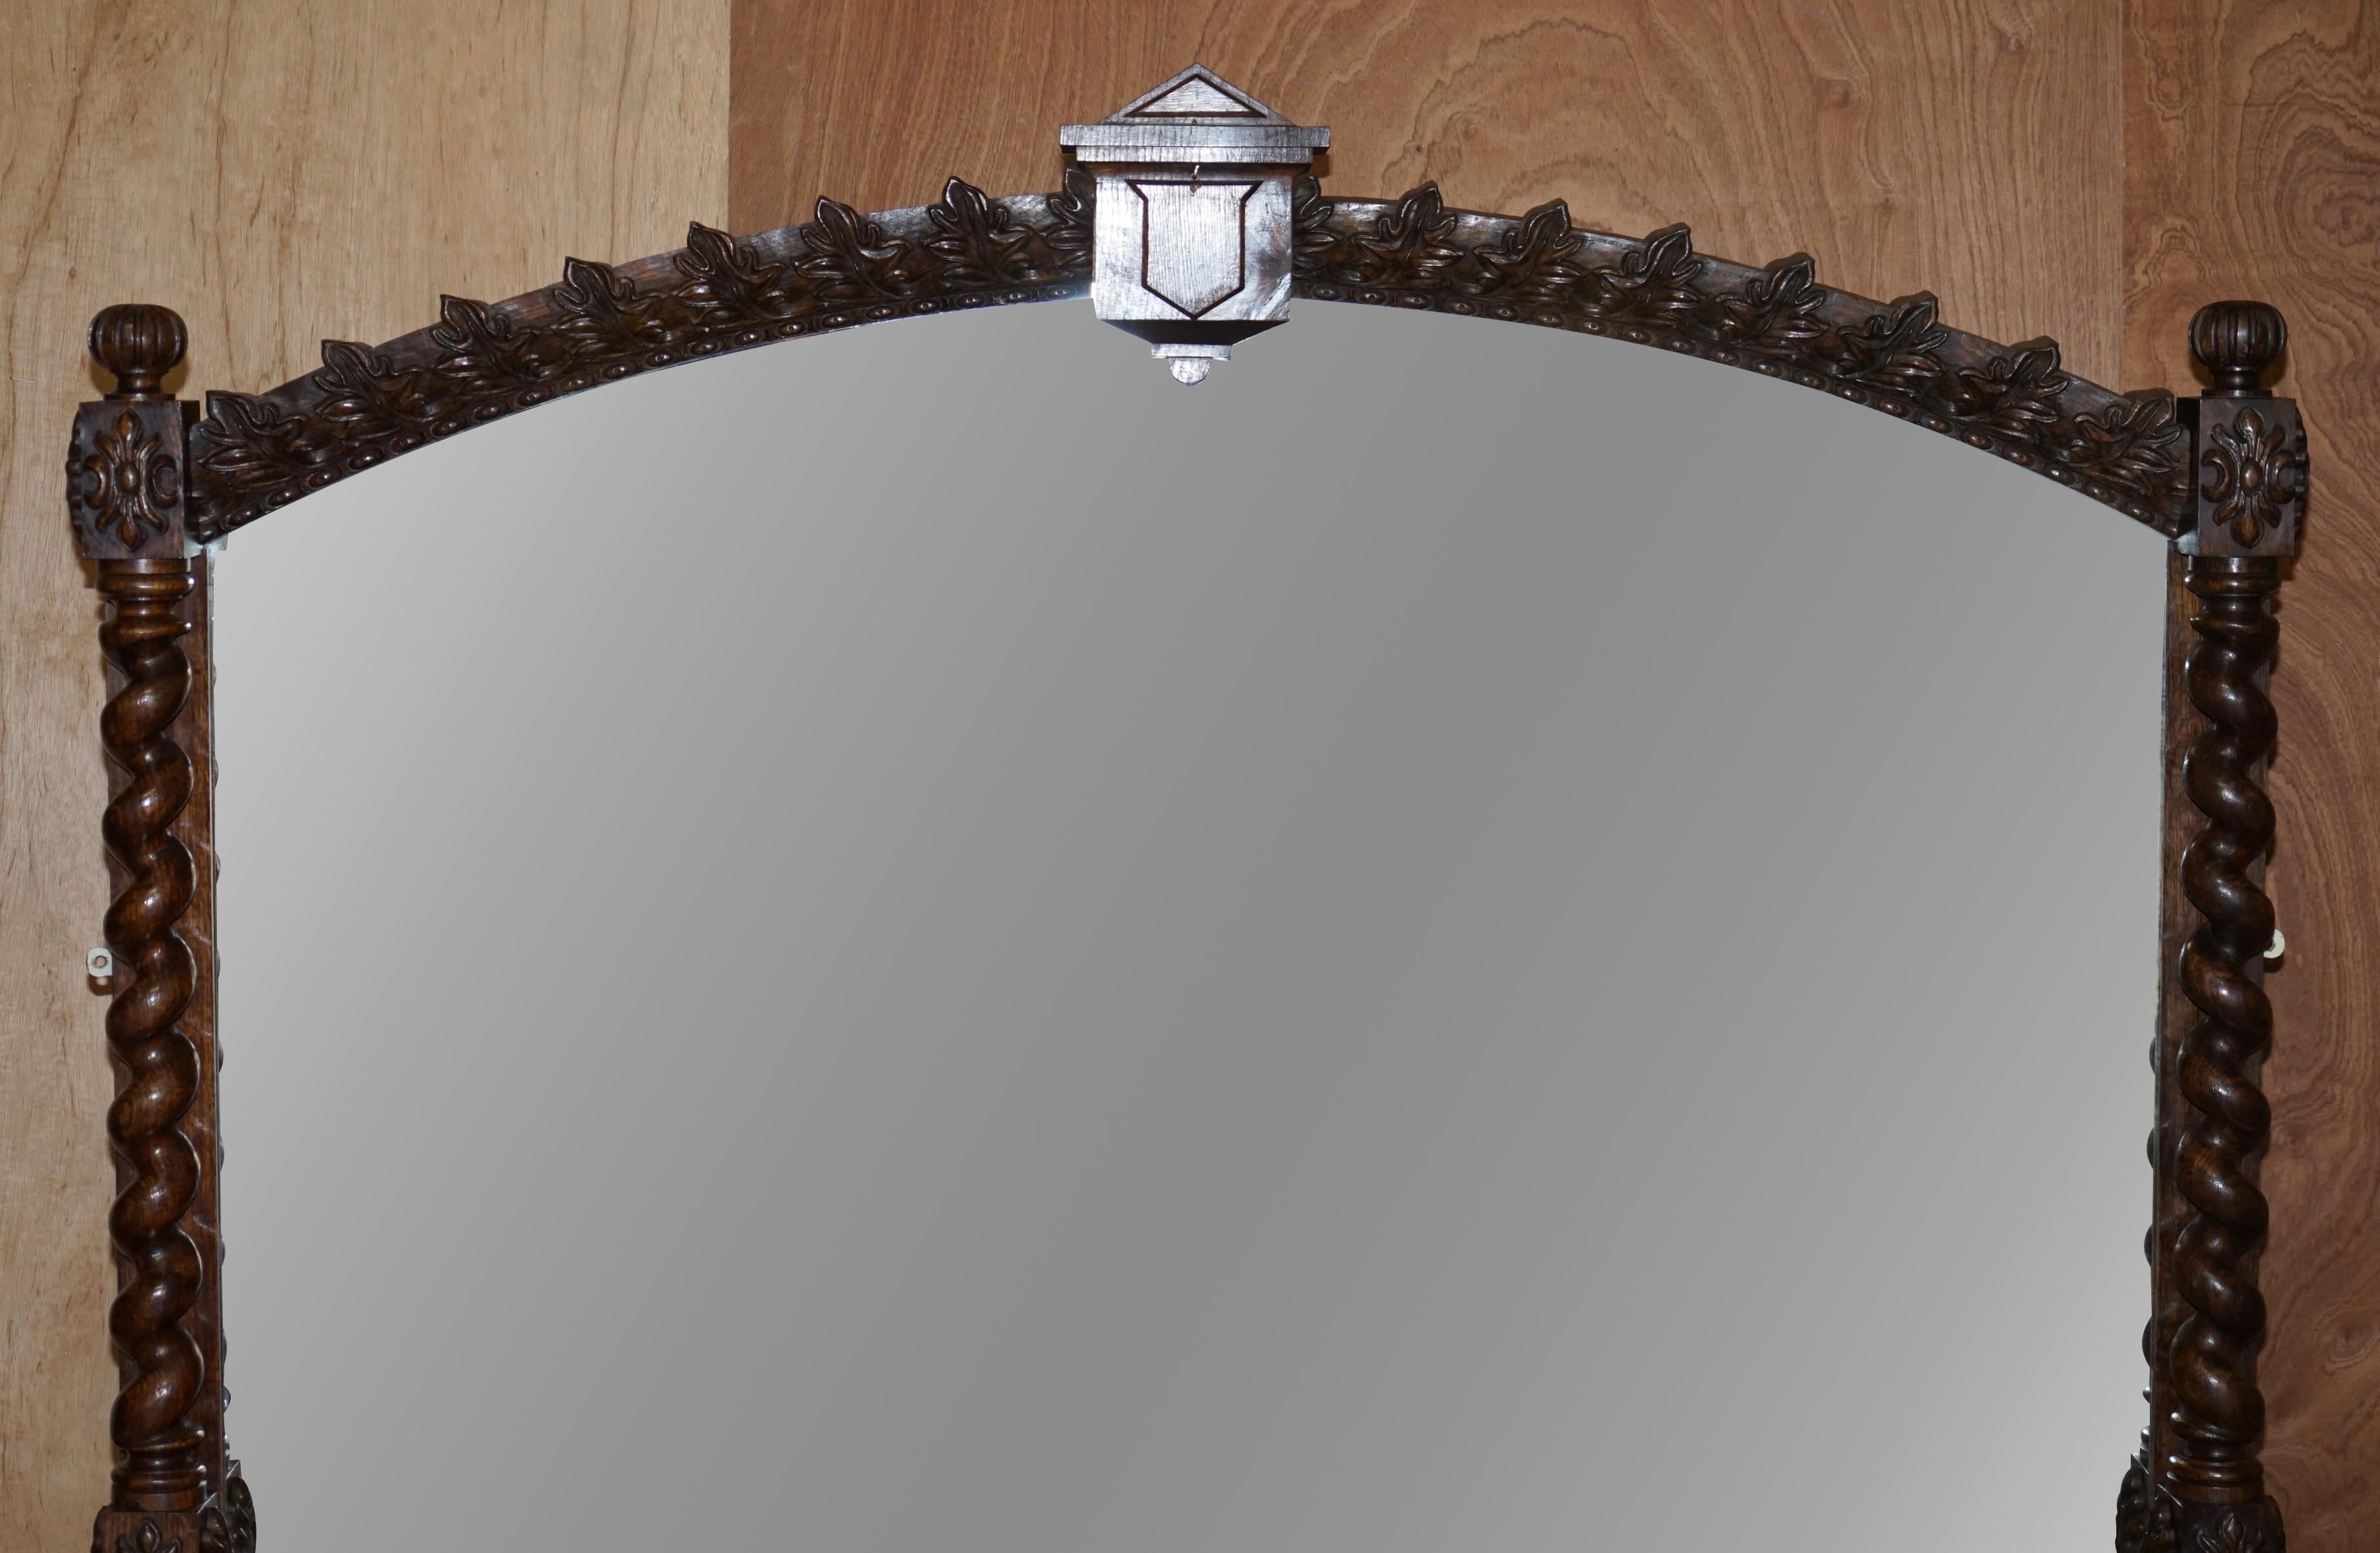 Wir freuen uns, atemberaubende ursprüngliche Platte Glas viktorianischen Spiegel mit handgeschnitzten Gerste Twist Eichenrahmen aus einem großen Lake District Anwesen bieten

Dieser Spiegel ist wirklich beeindruckend, ob Sie es glauben oder nicht,